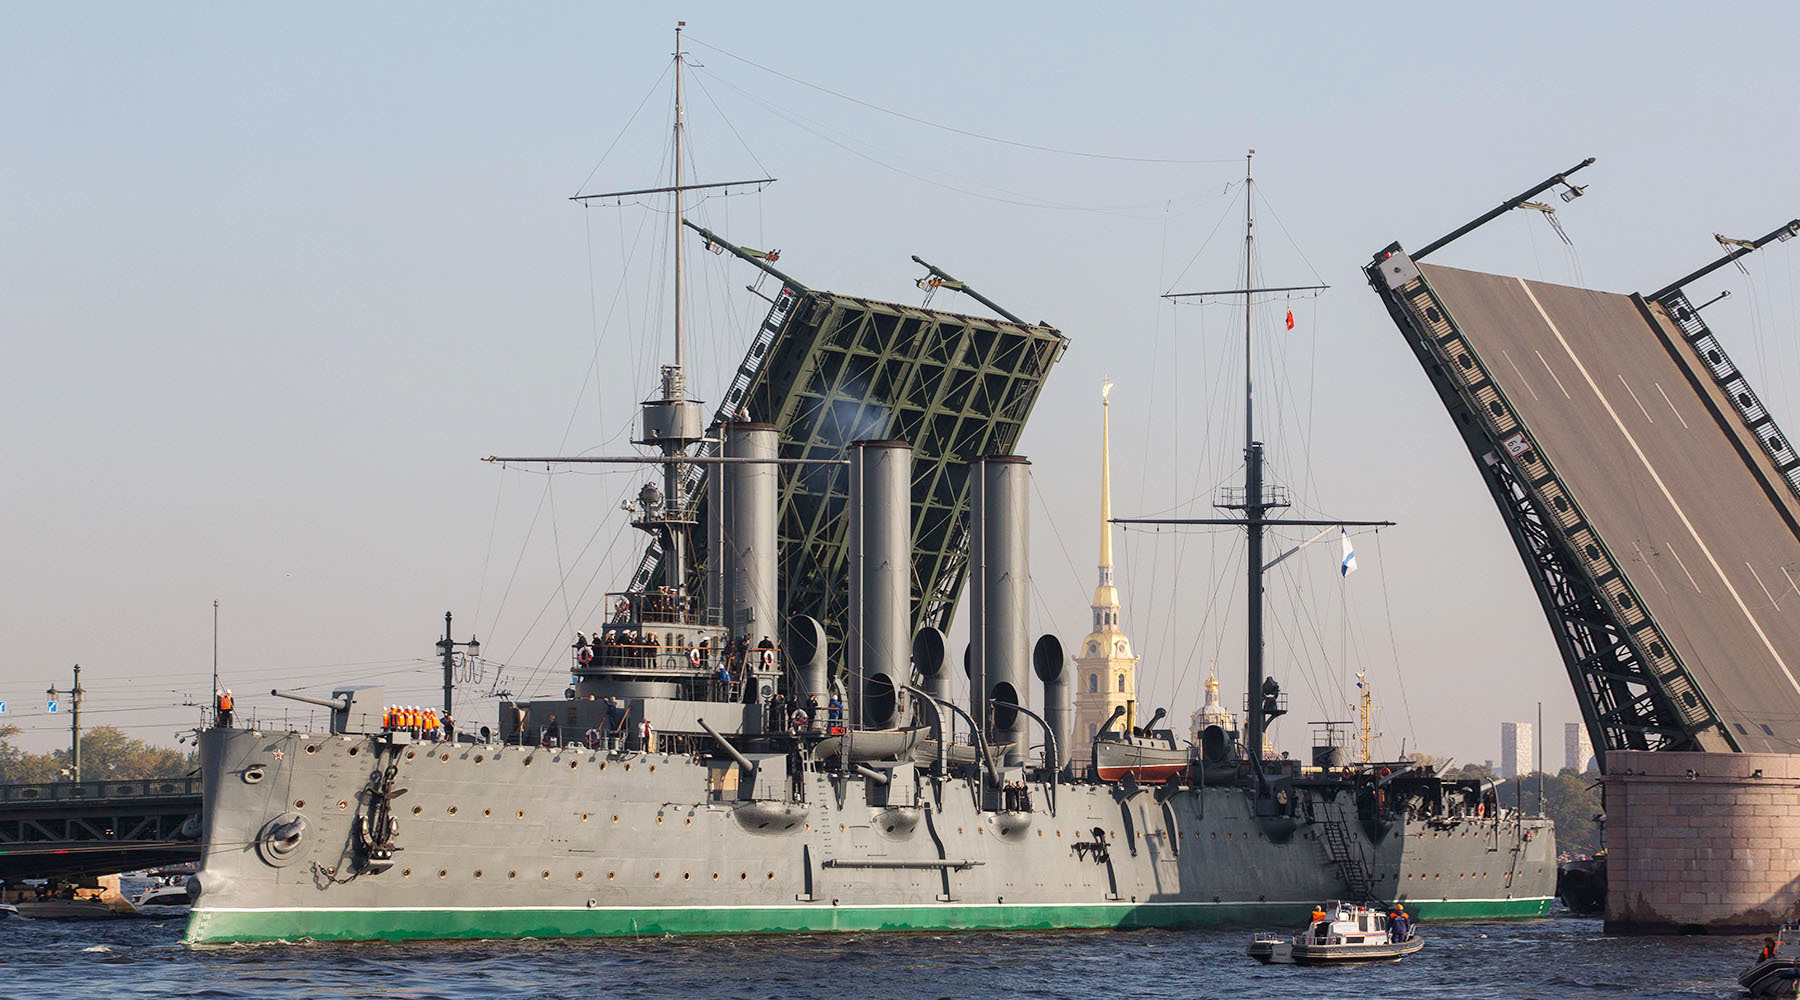 Корабль крейсер Аврора в Питере